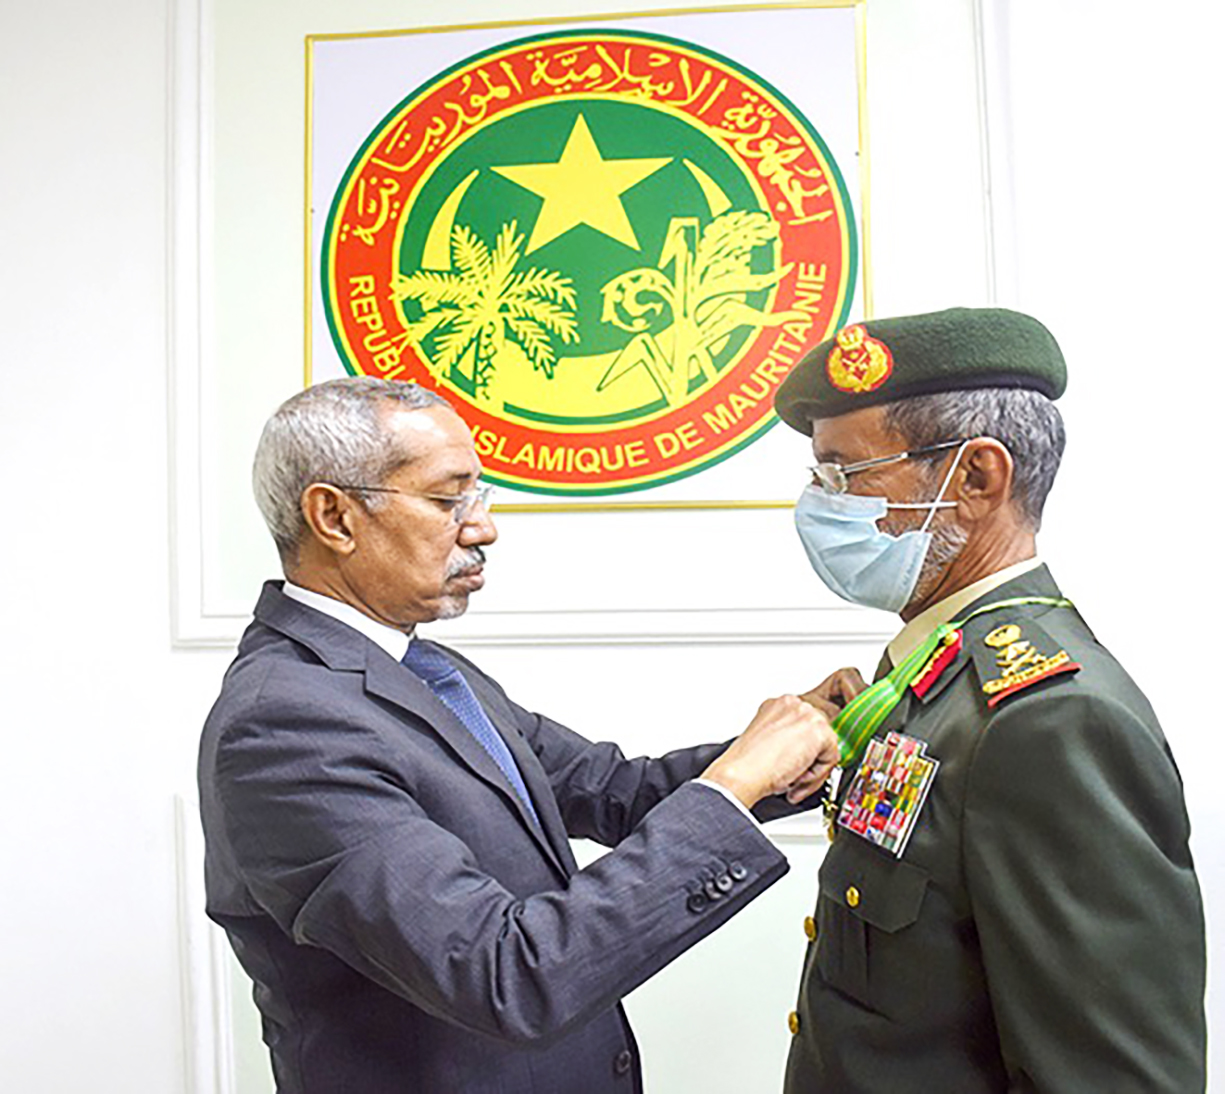 الرئيس الموريتاني يستقبل رئيس أركان القوات المسلحة ويمنحه وسام كوماندور في نظام الاستحقاق الوطني